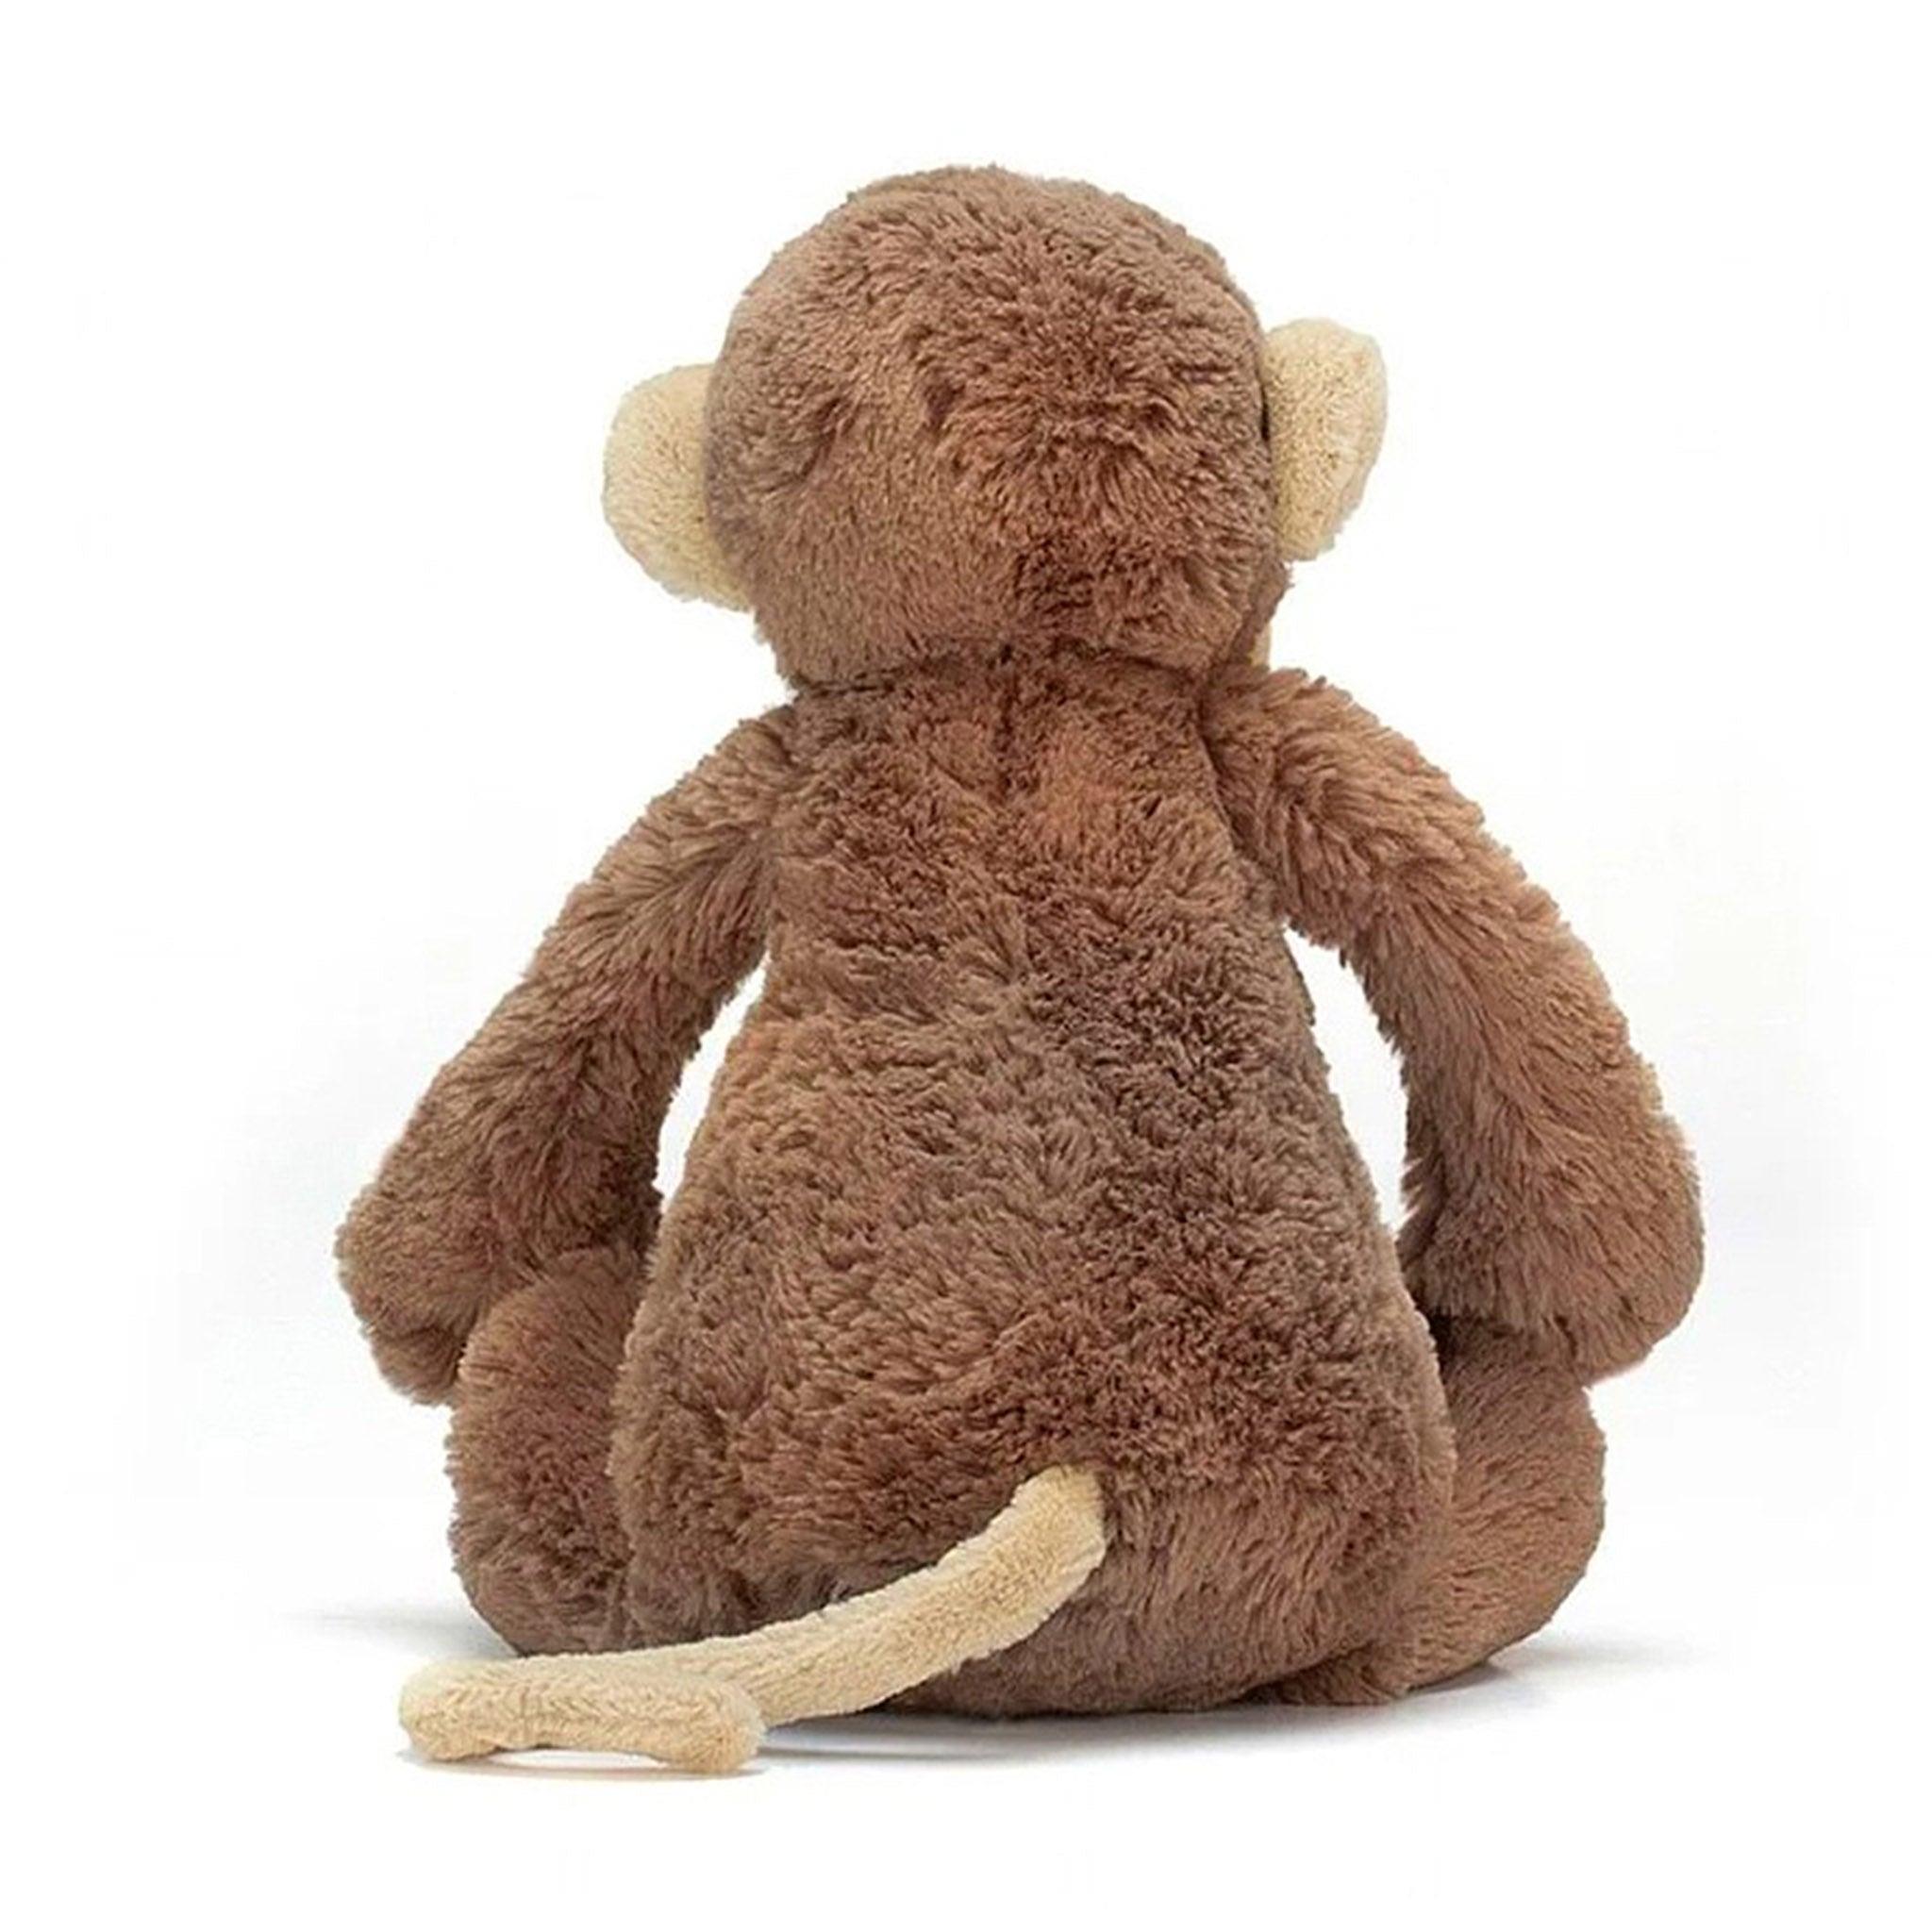 Jellycat Medium Bashful Monkey Plush Toy